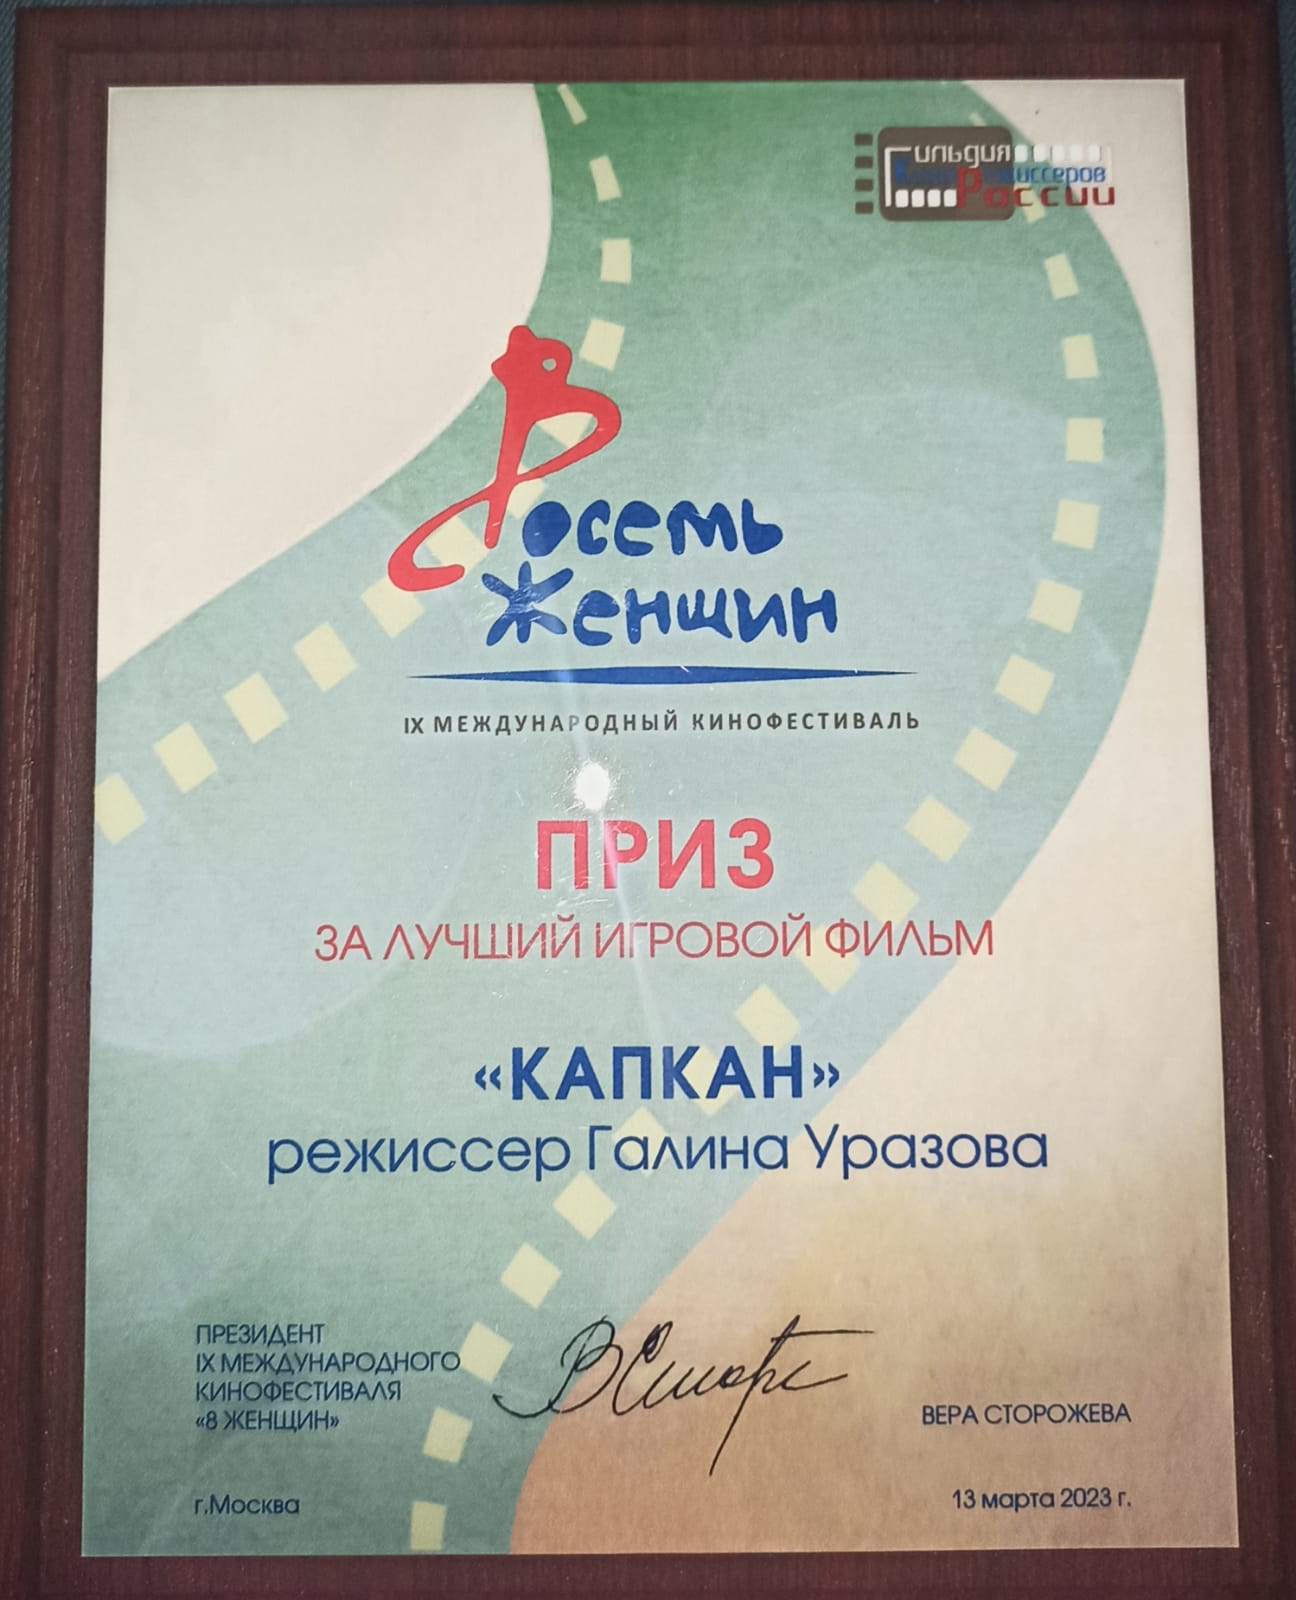 Фильм Галины Уразовой «Капкан» продолжает получать премии  - фото 3